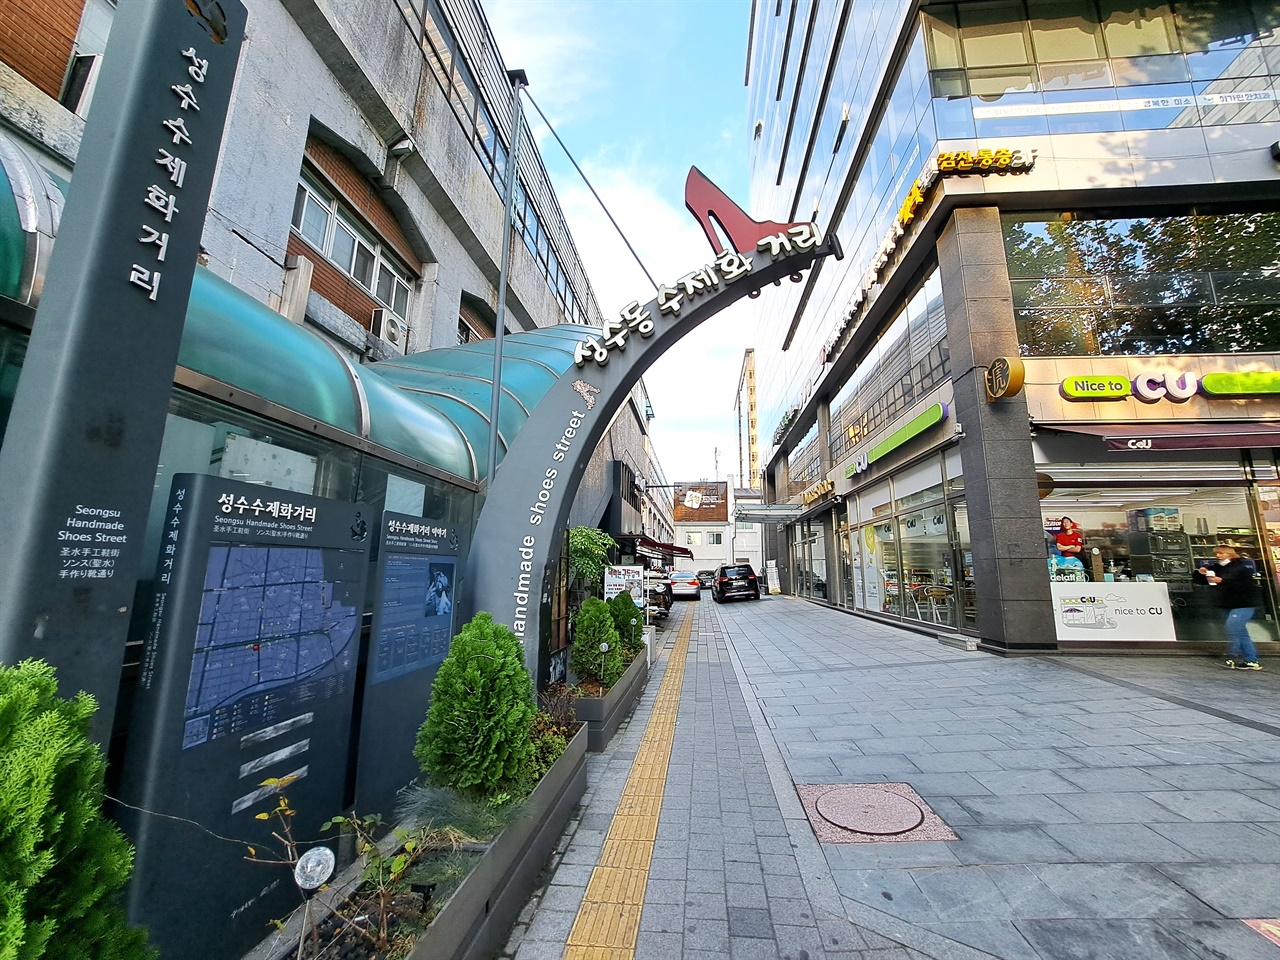 서울 지하철 2호선 성수역 2번 출구에 있는 성수동 수제화 거리 상징. 이 길을 따라가면 지하철 역사 하부 공간을 활용한 수제화 매장을 만날 수 있음.